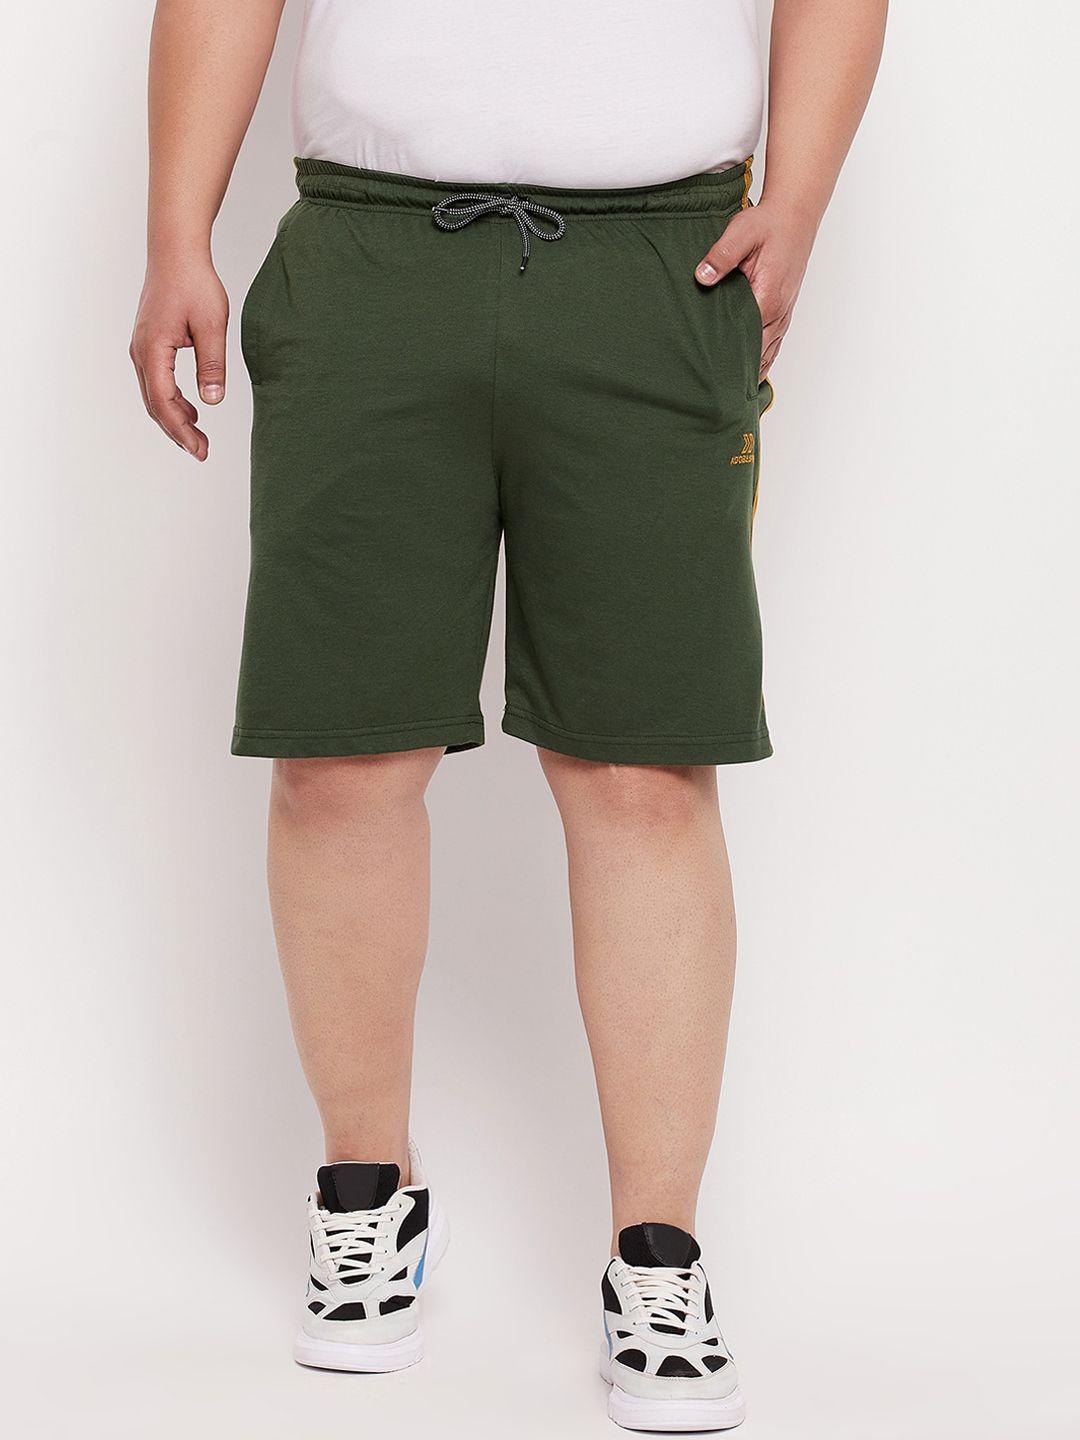 adobe-men-olive-green-shorts